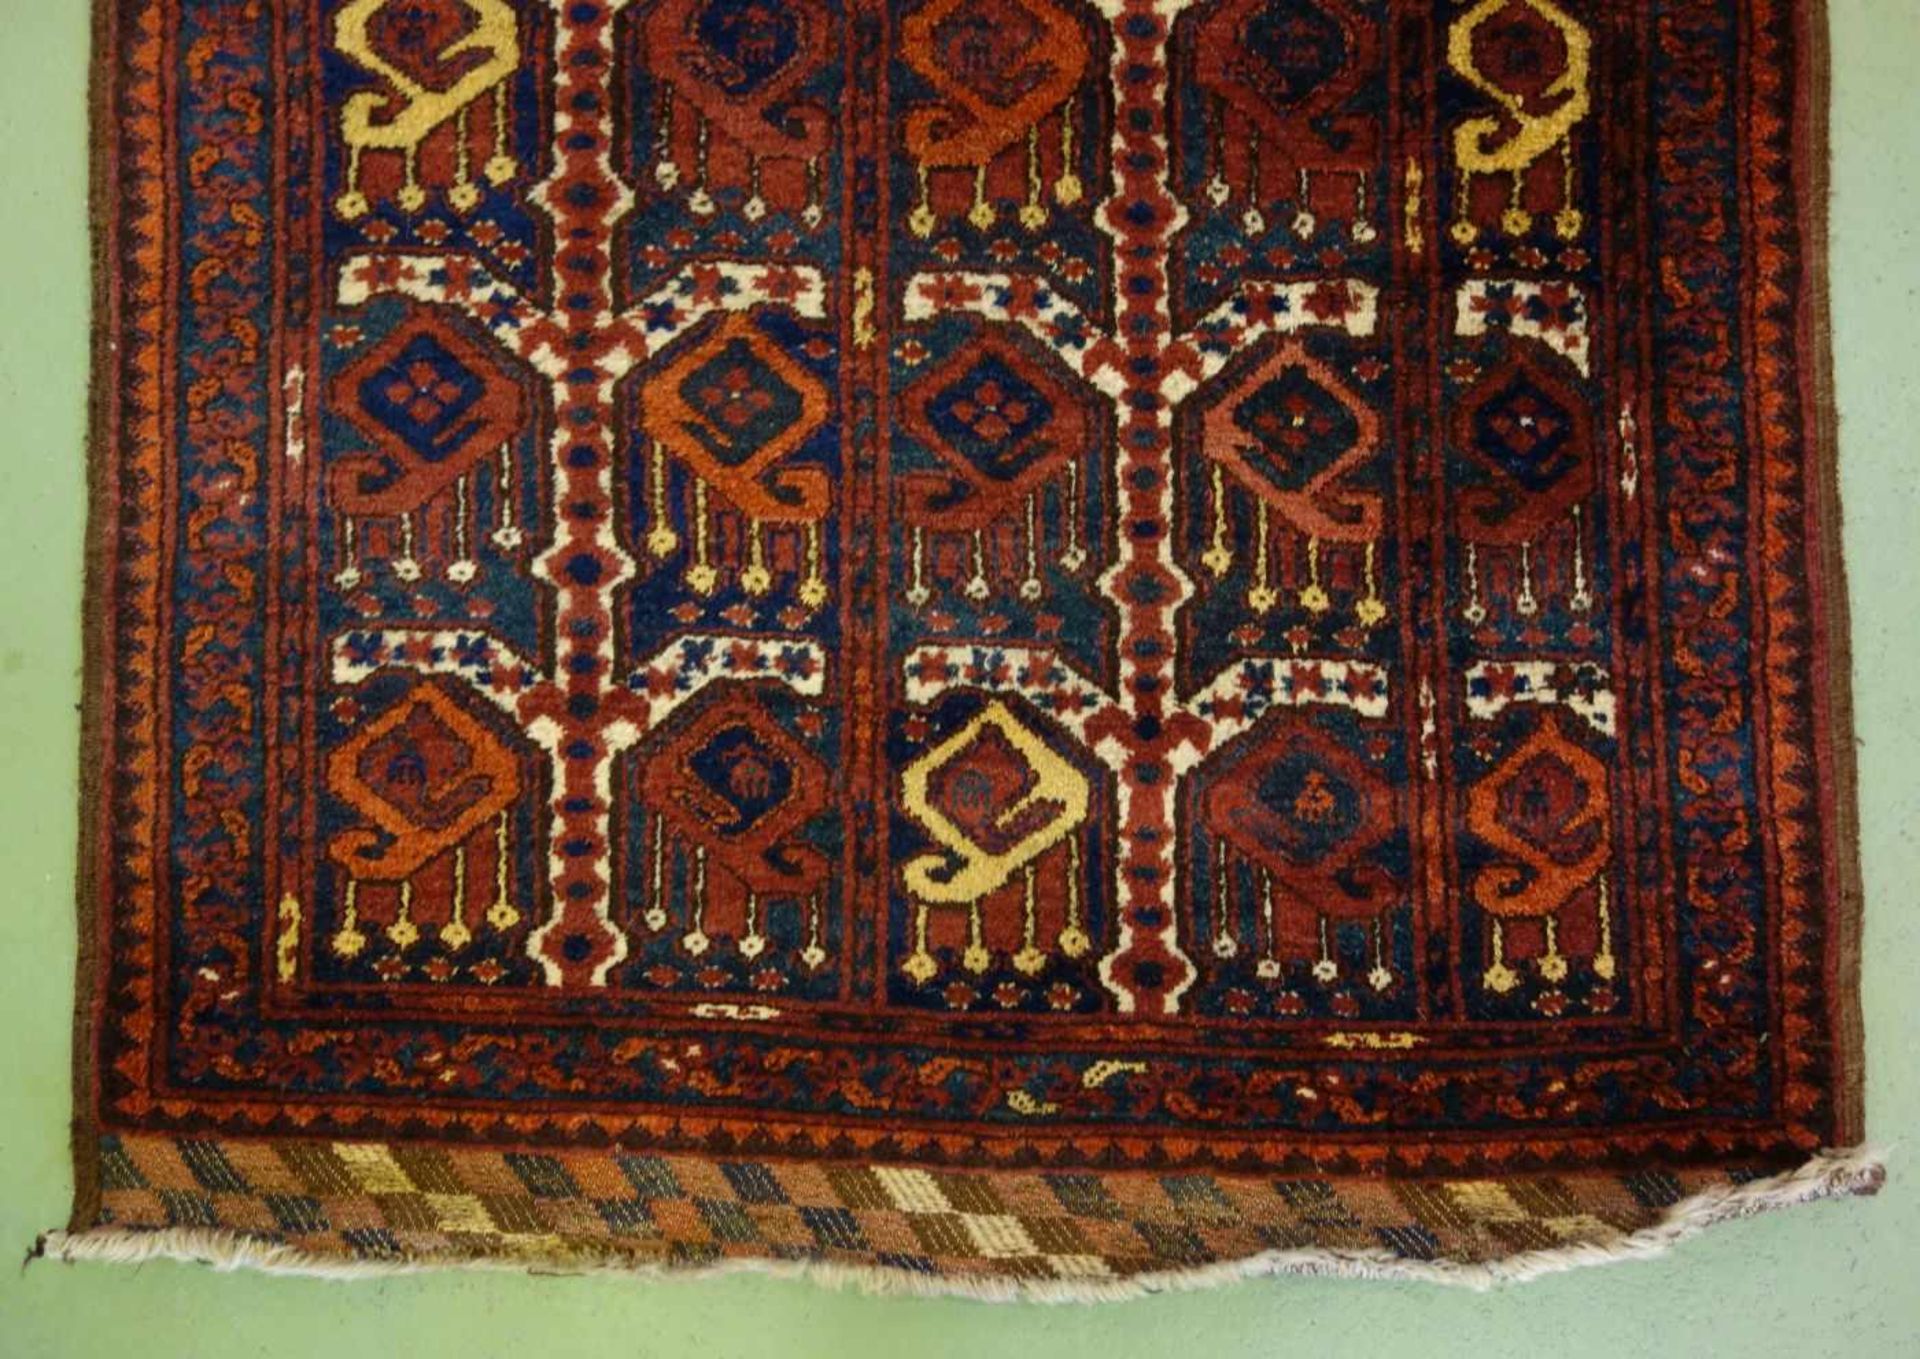 BESCHIR (ERSARI BESCHIR) / KLEINER TEPPICH / carpet / Zentralasien oder Südturkestan, wahrscheinlich - Image 8 of 15